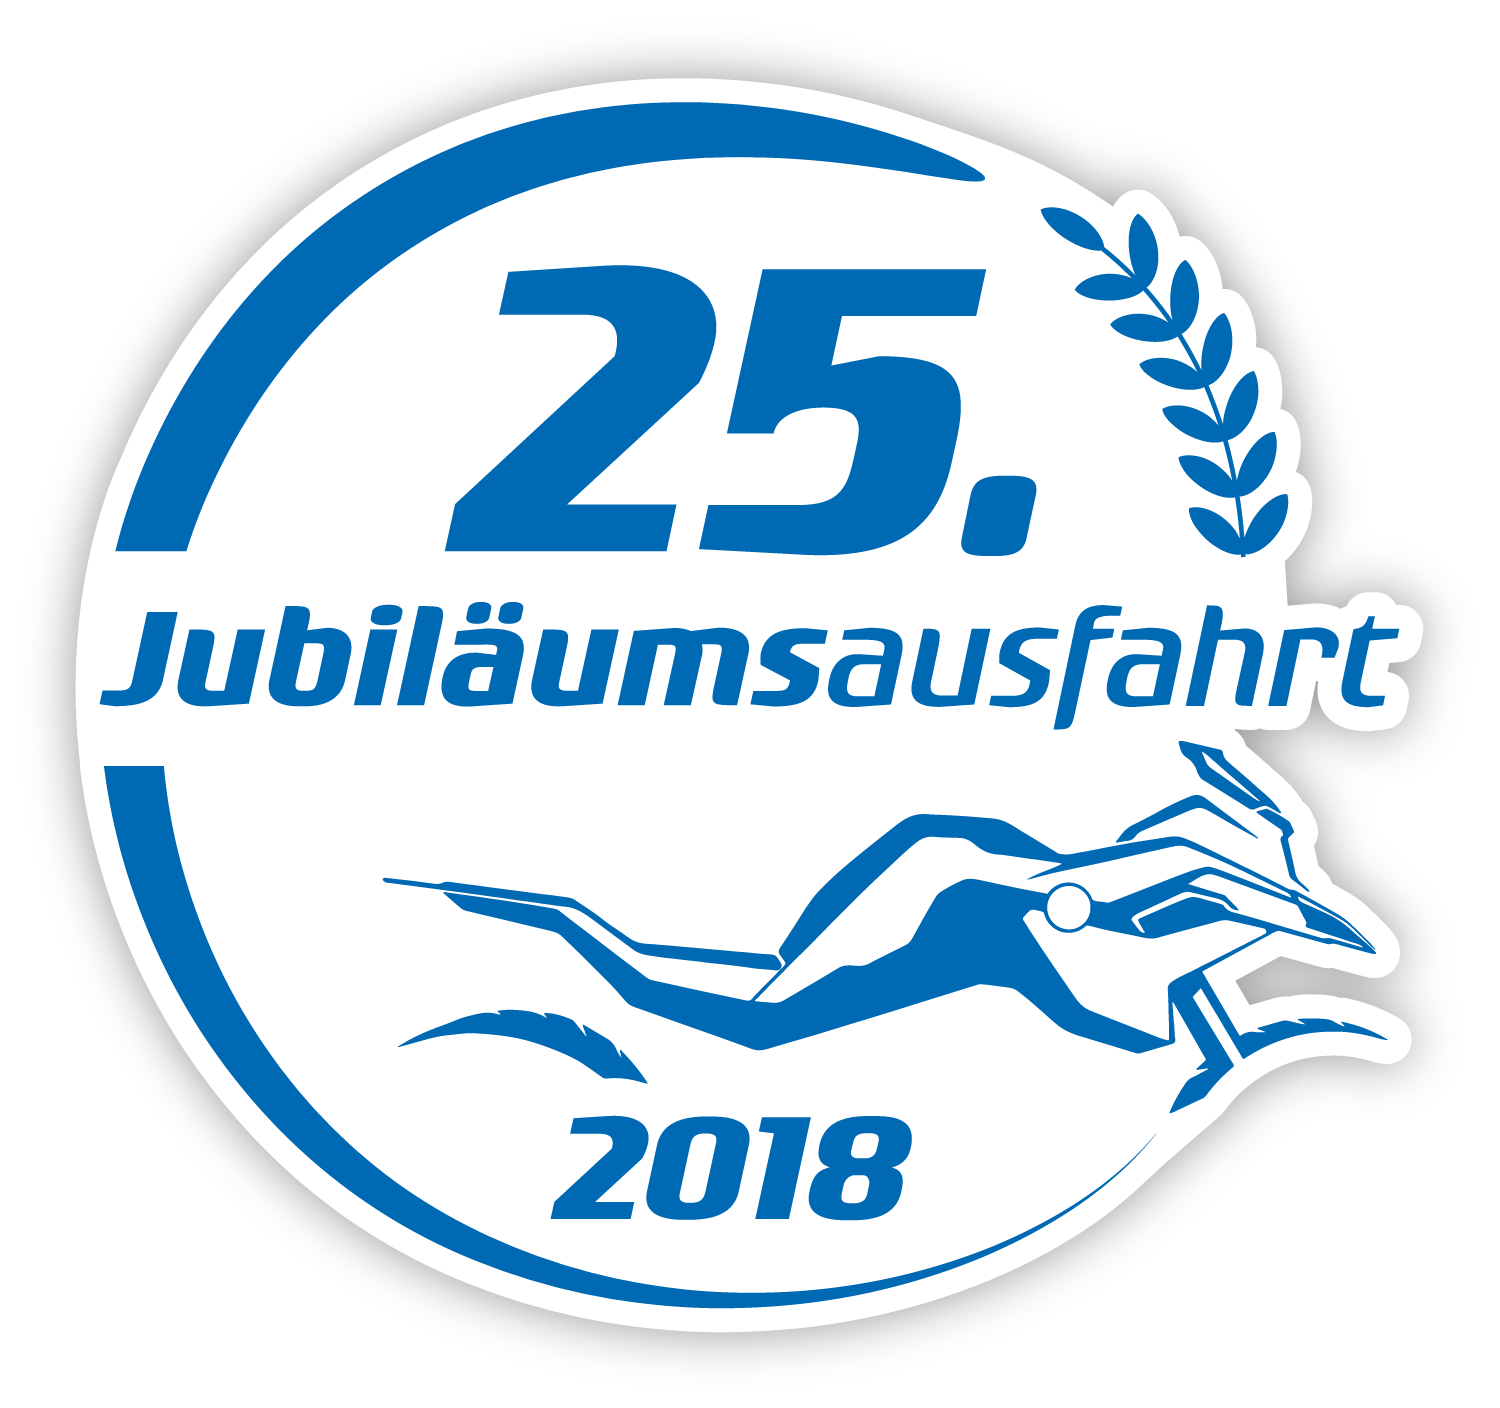 25. Hechler Ausfahrt - Jubiläumsausfahrt 2018